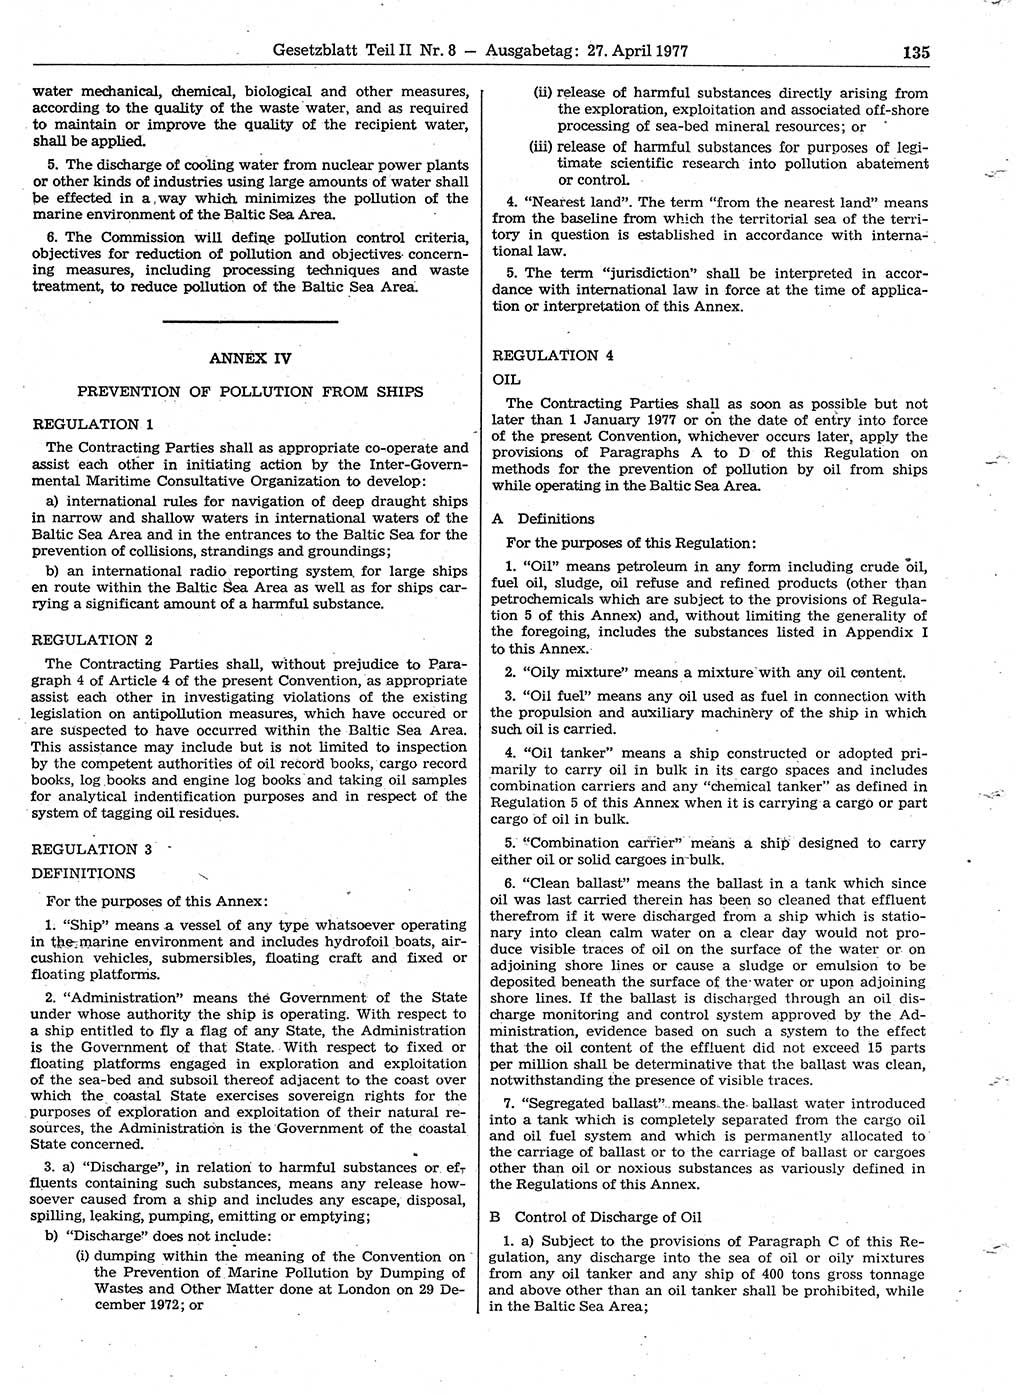 Gesetzblatt (GBl.) der Deutschen Demokratischen Republik (DDR) Teil ⅠⅠ 1977, Seite 135 (GBl. DDR ⅠⅠ 1977, S. 135)